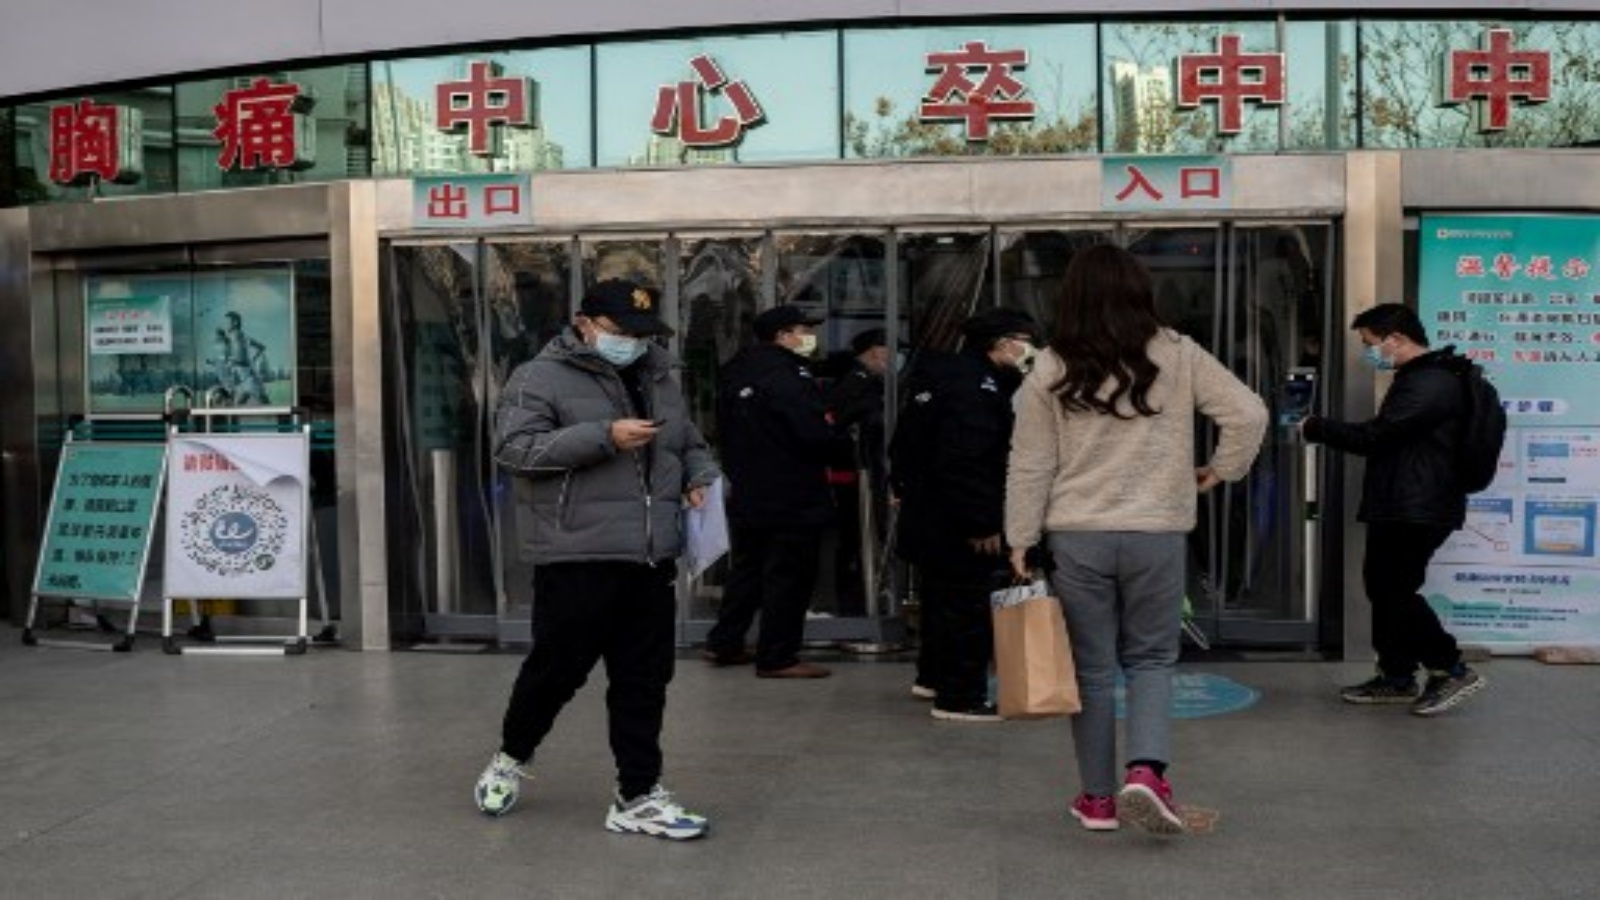 صور لأشخاص عند مدخل مستشفى الصليب الأحمر في ووهان في 11 يناير 2021 ، حيث تحتفل المدينة بالذكرى السنوية الأولى عندما أكدت الصين أول حالة وفاة بسبب فيروس كورونا COVID-19